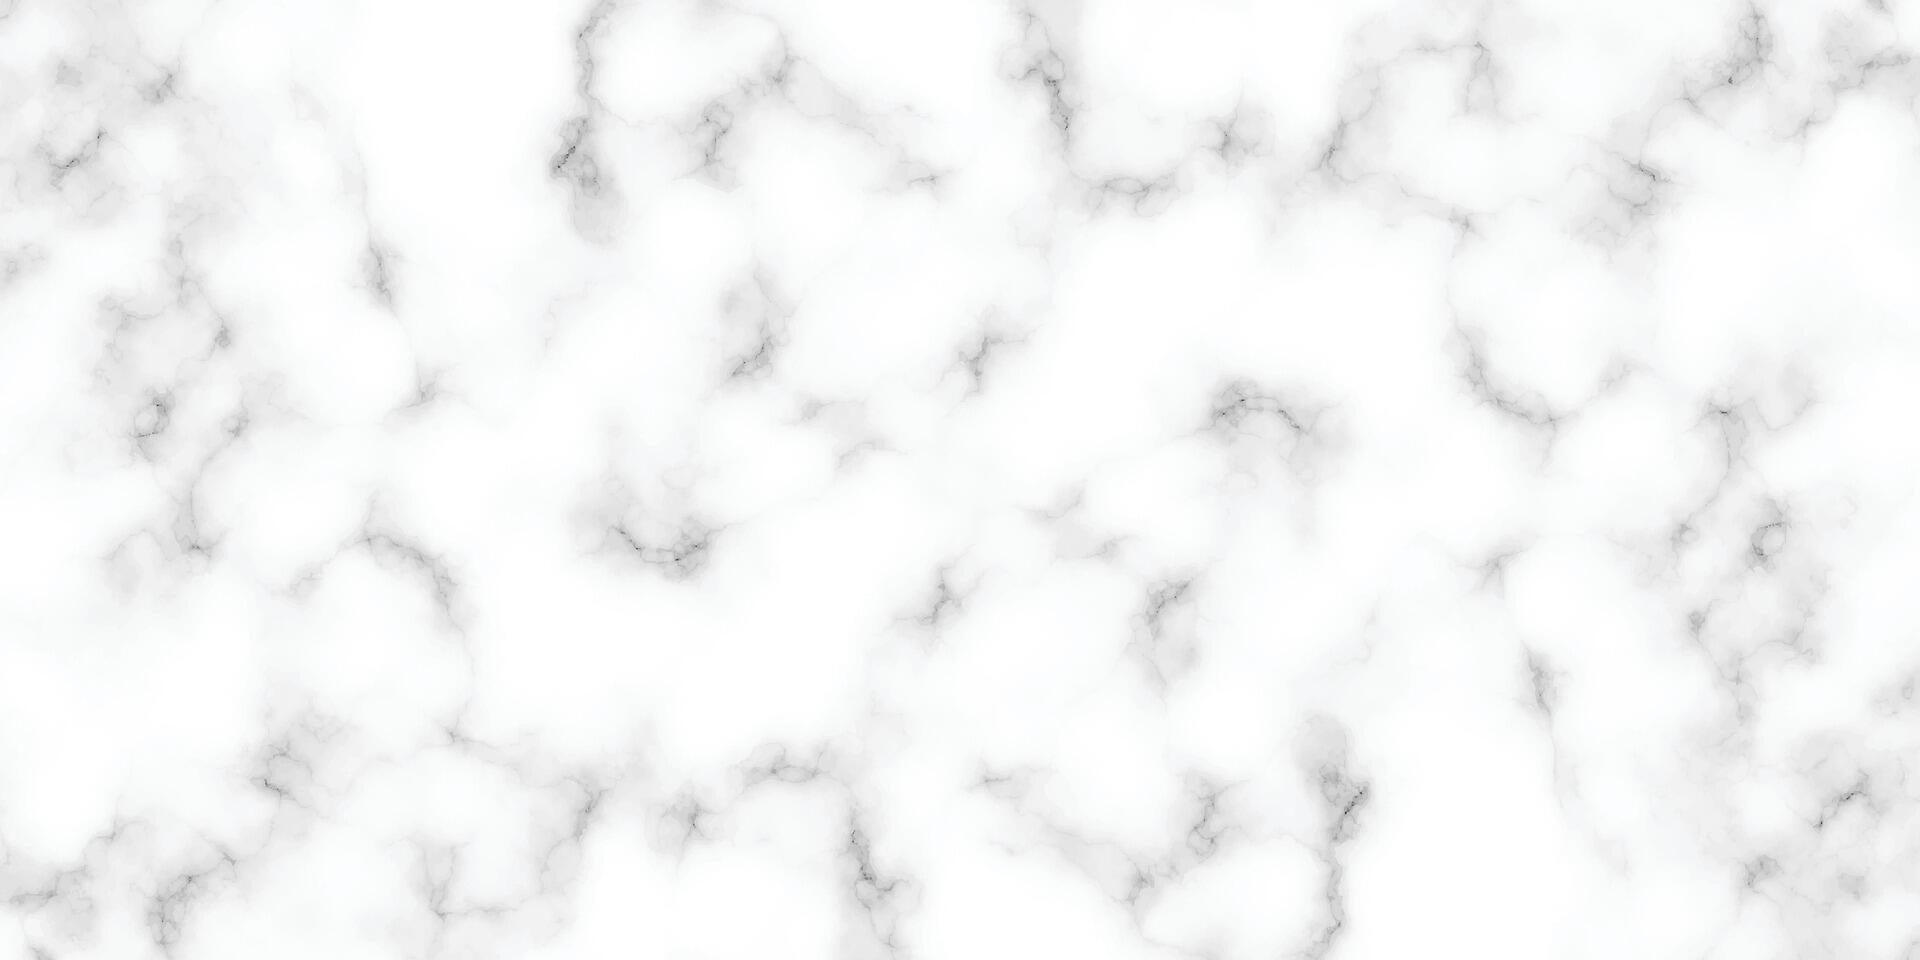 Panorama- Weiß Marmor Stein Textur. Weiß Marmor Textur Hintergrund. hohe Auflösung Weiß carrara Marmor Stein Textur vektor